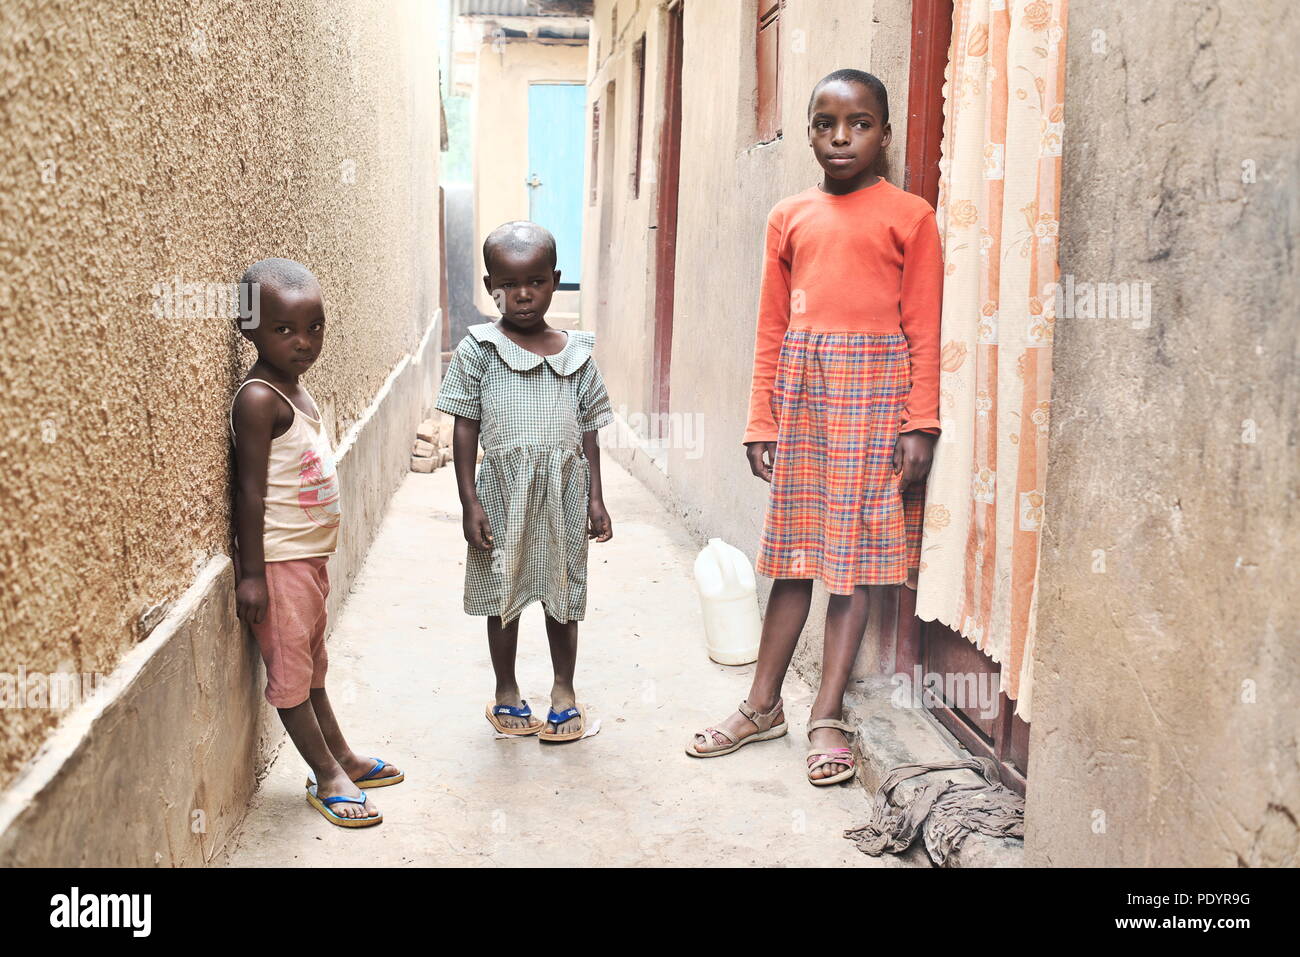 Tres niños africanos jóvenes pobres se encuentran en un callejón en Uganda, en un barrio marginal, vestidos con ropa básica fuera de sus hogares pobres Foto de stock